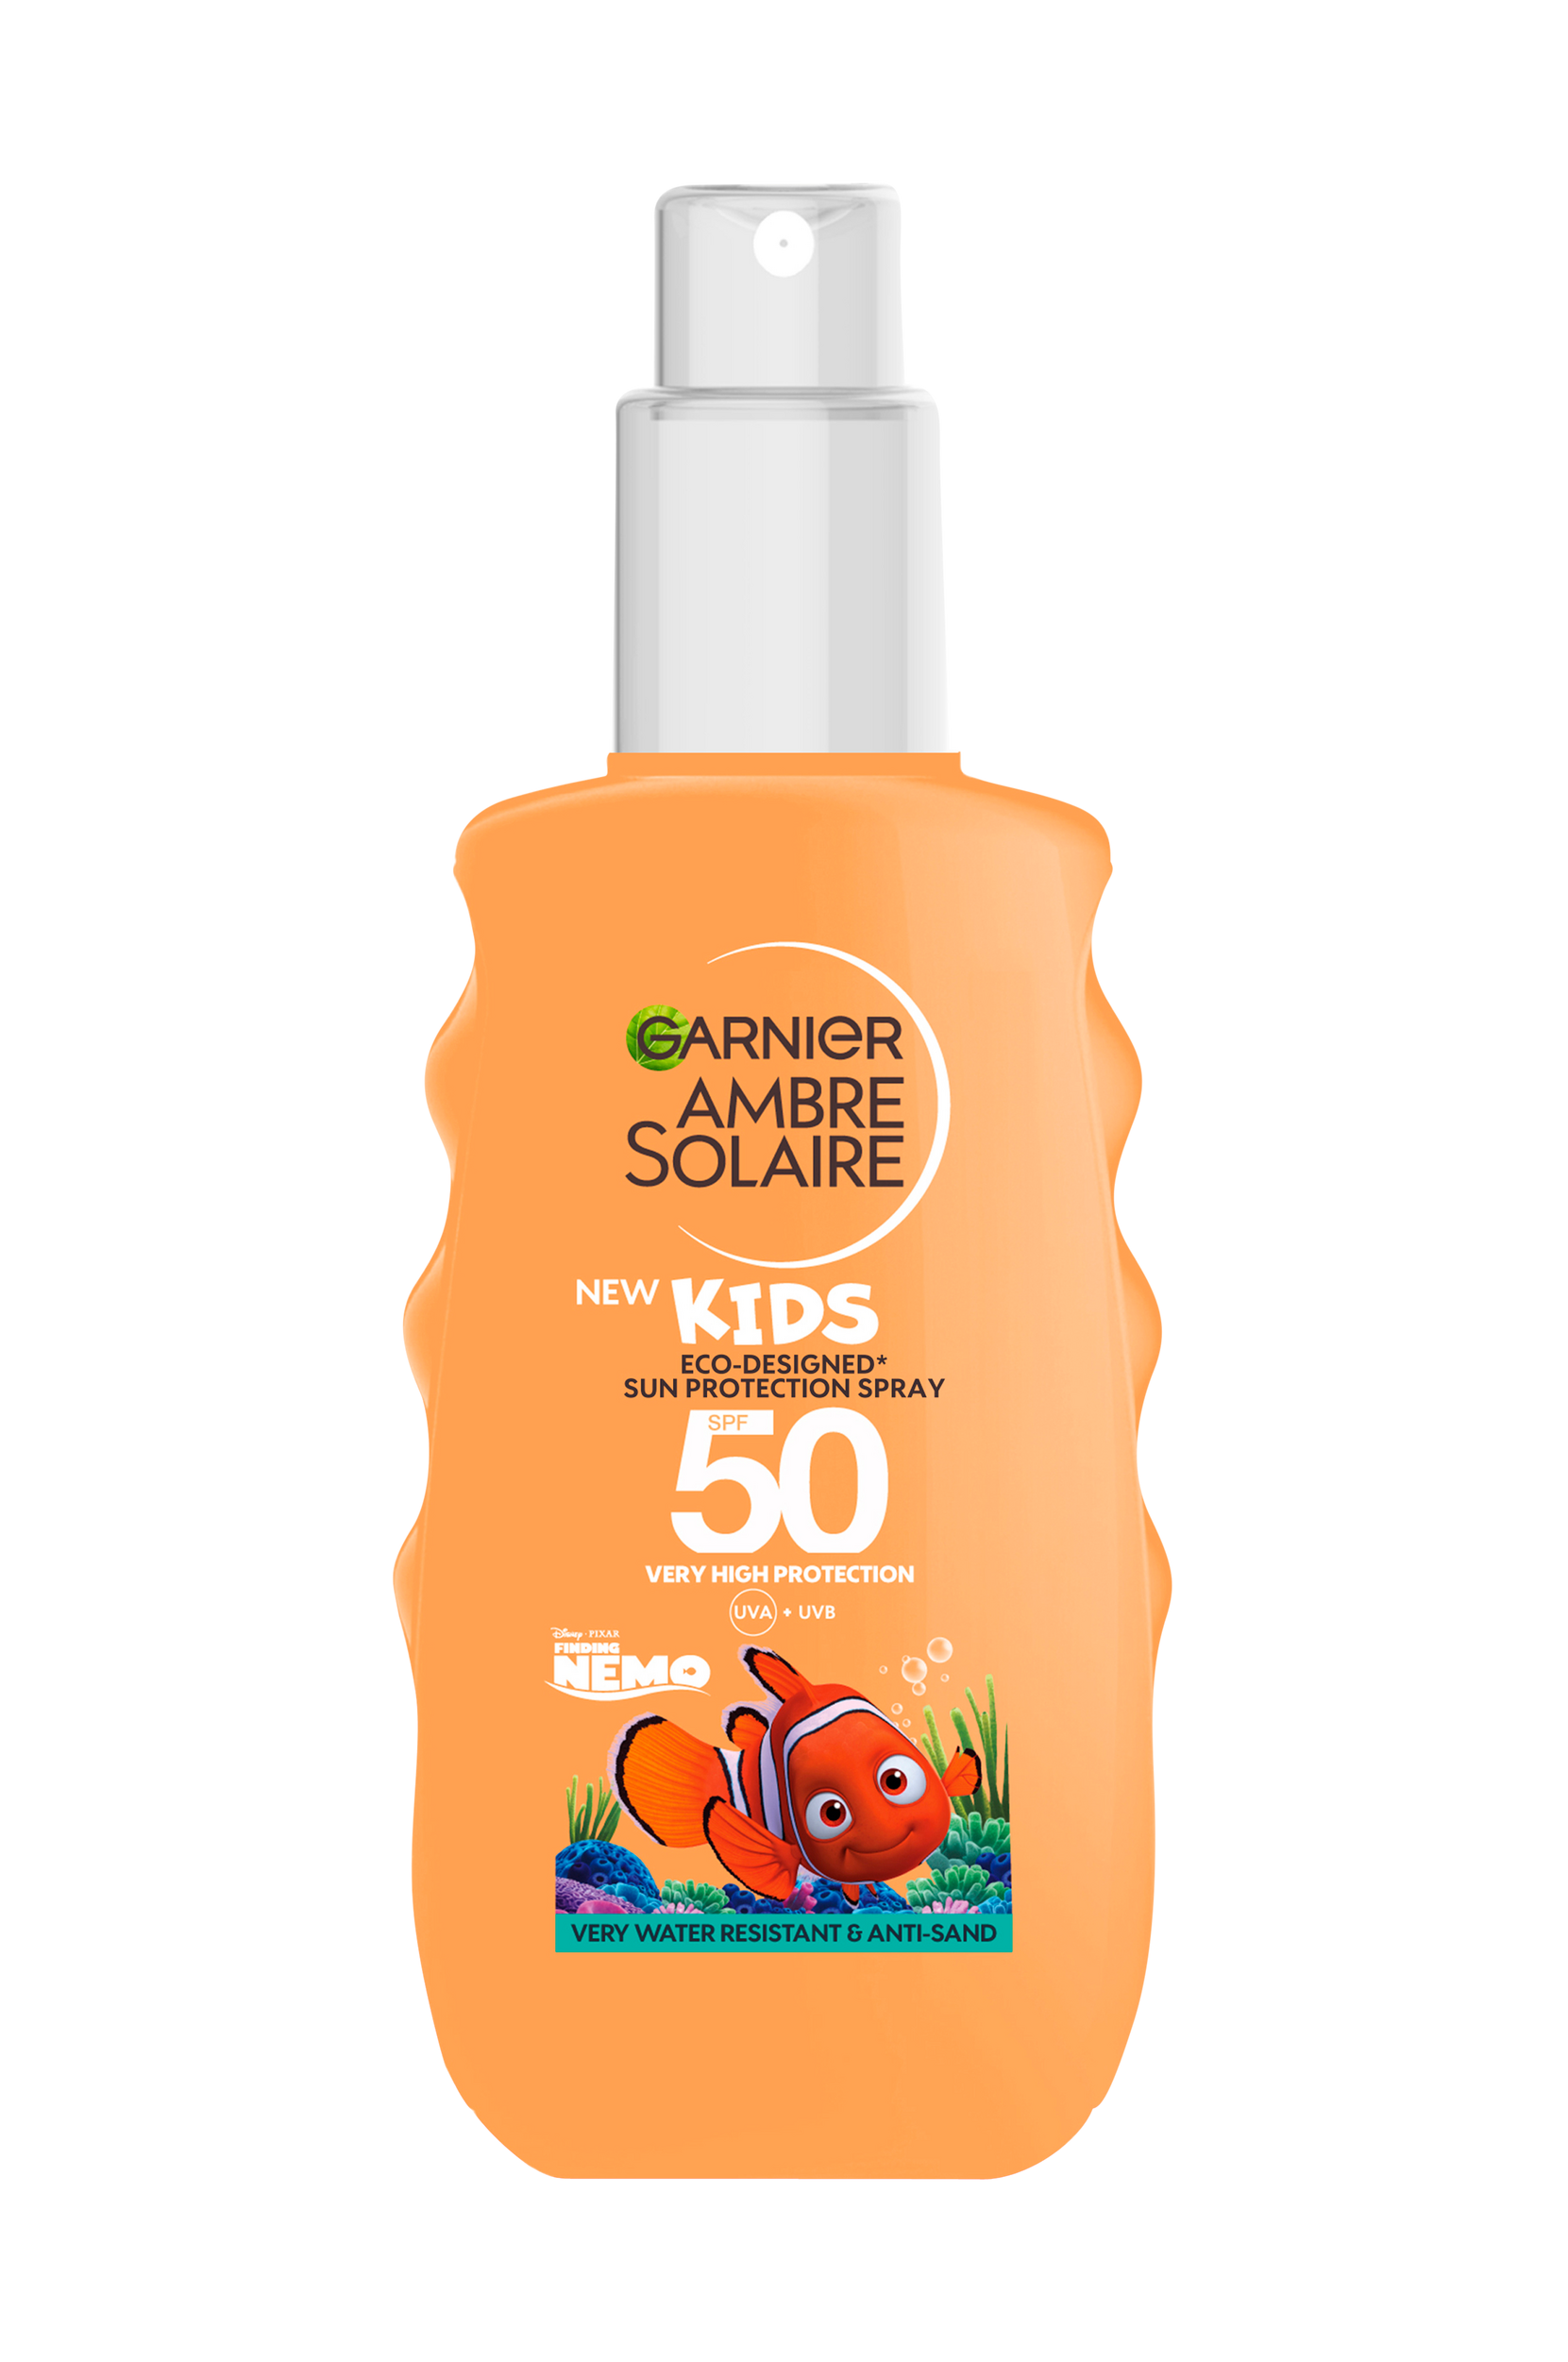 Garnier - Ambre Solaire Kids Eco-Designed Sun Protection Spray SPF 50 150 ml